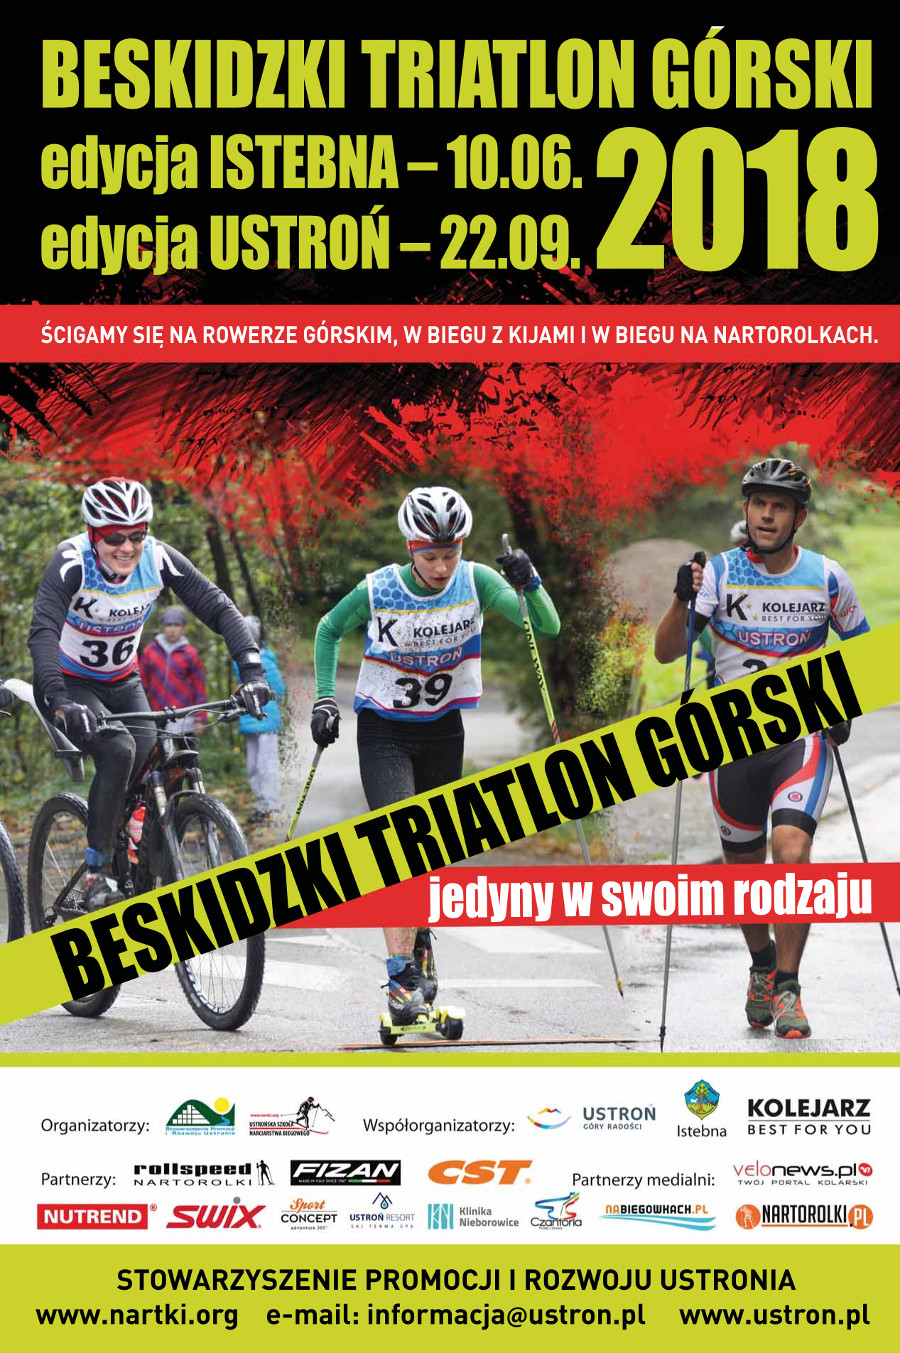 Beskidzki Triatlon Górski 2018